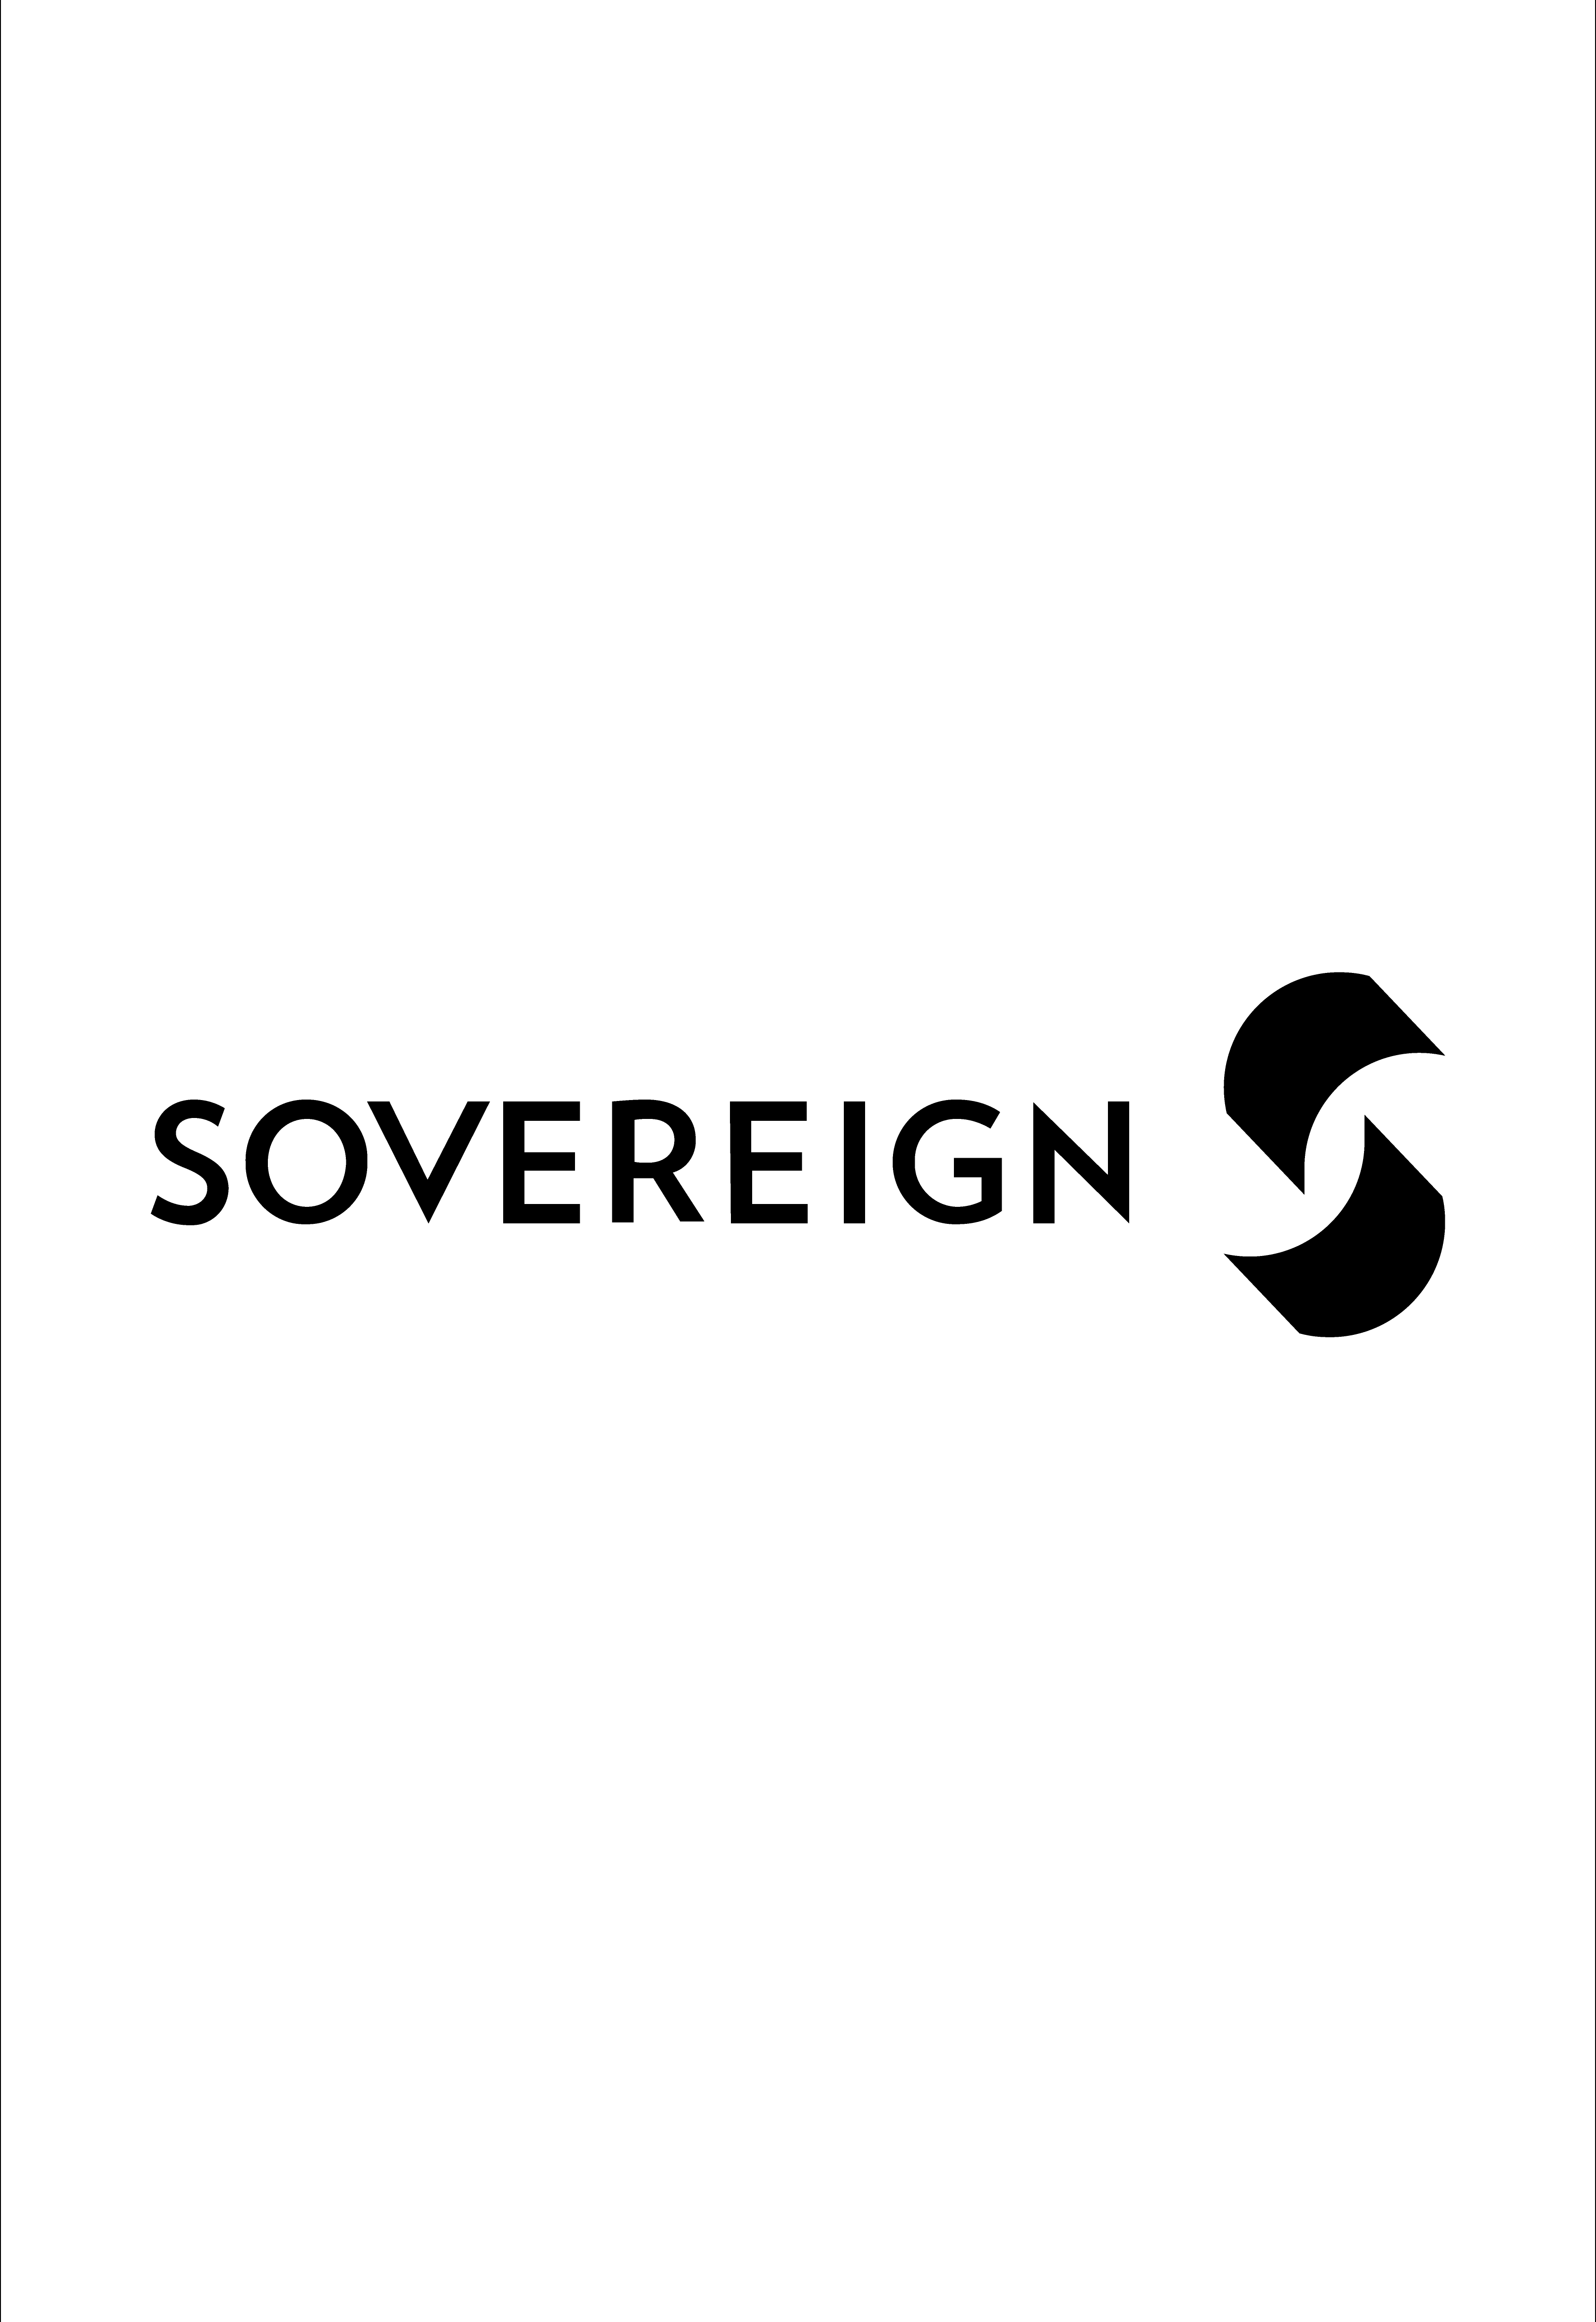 Sovereign case study portrait-04